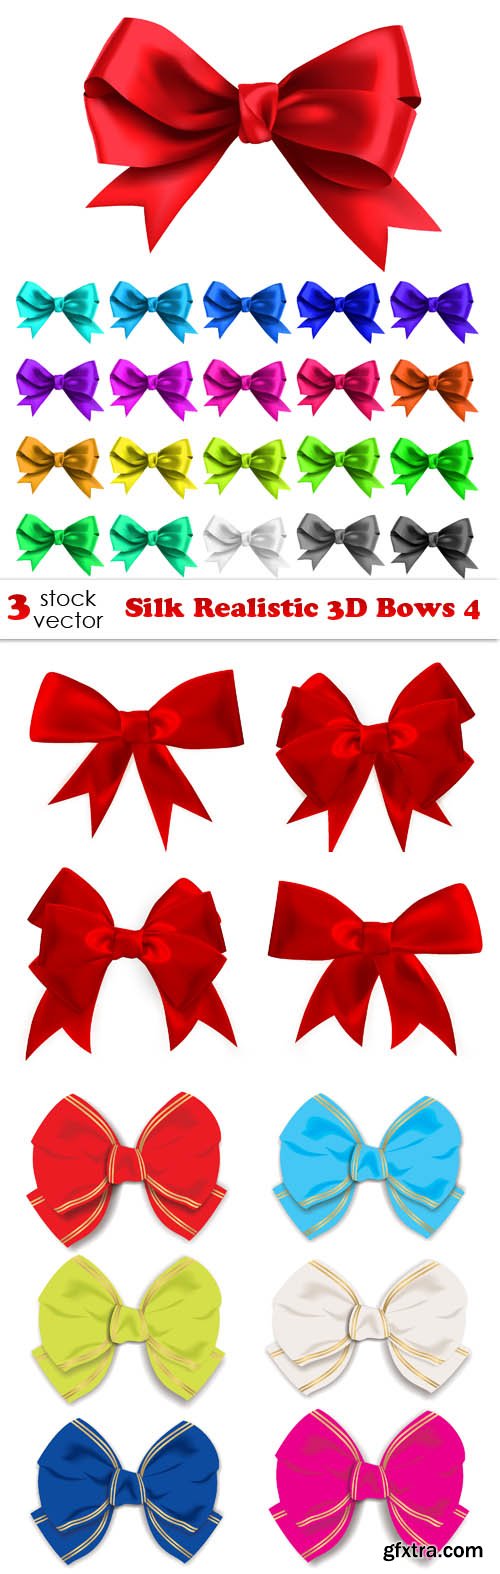 Vectors - Silk Realistic 3D Bows 4